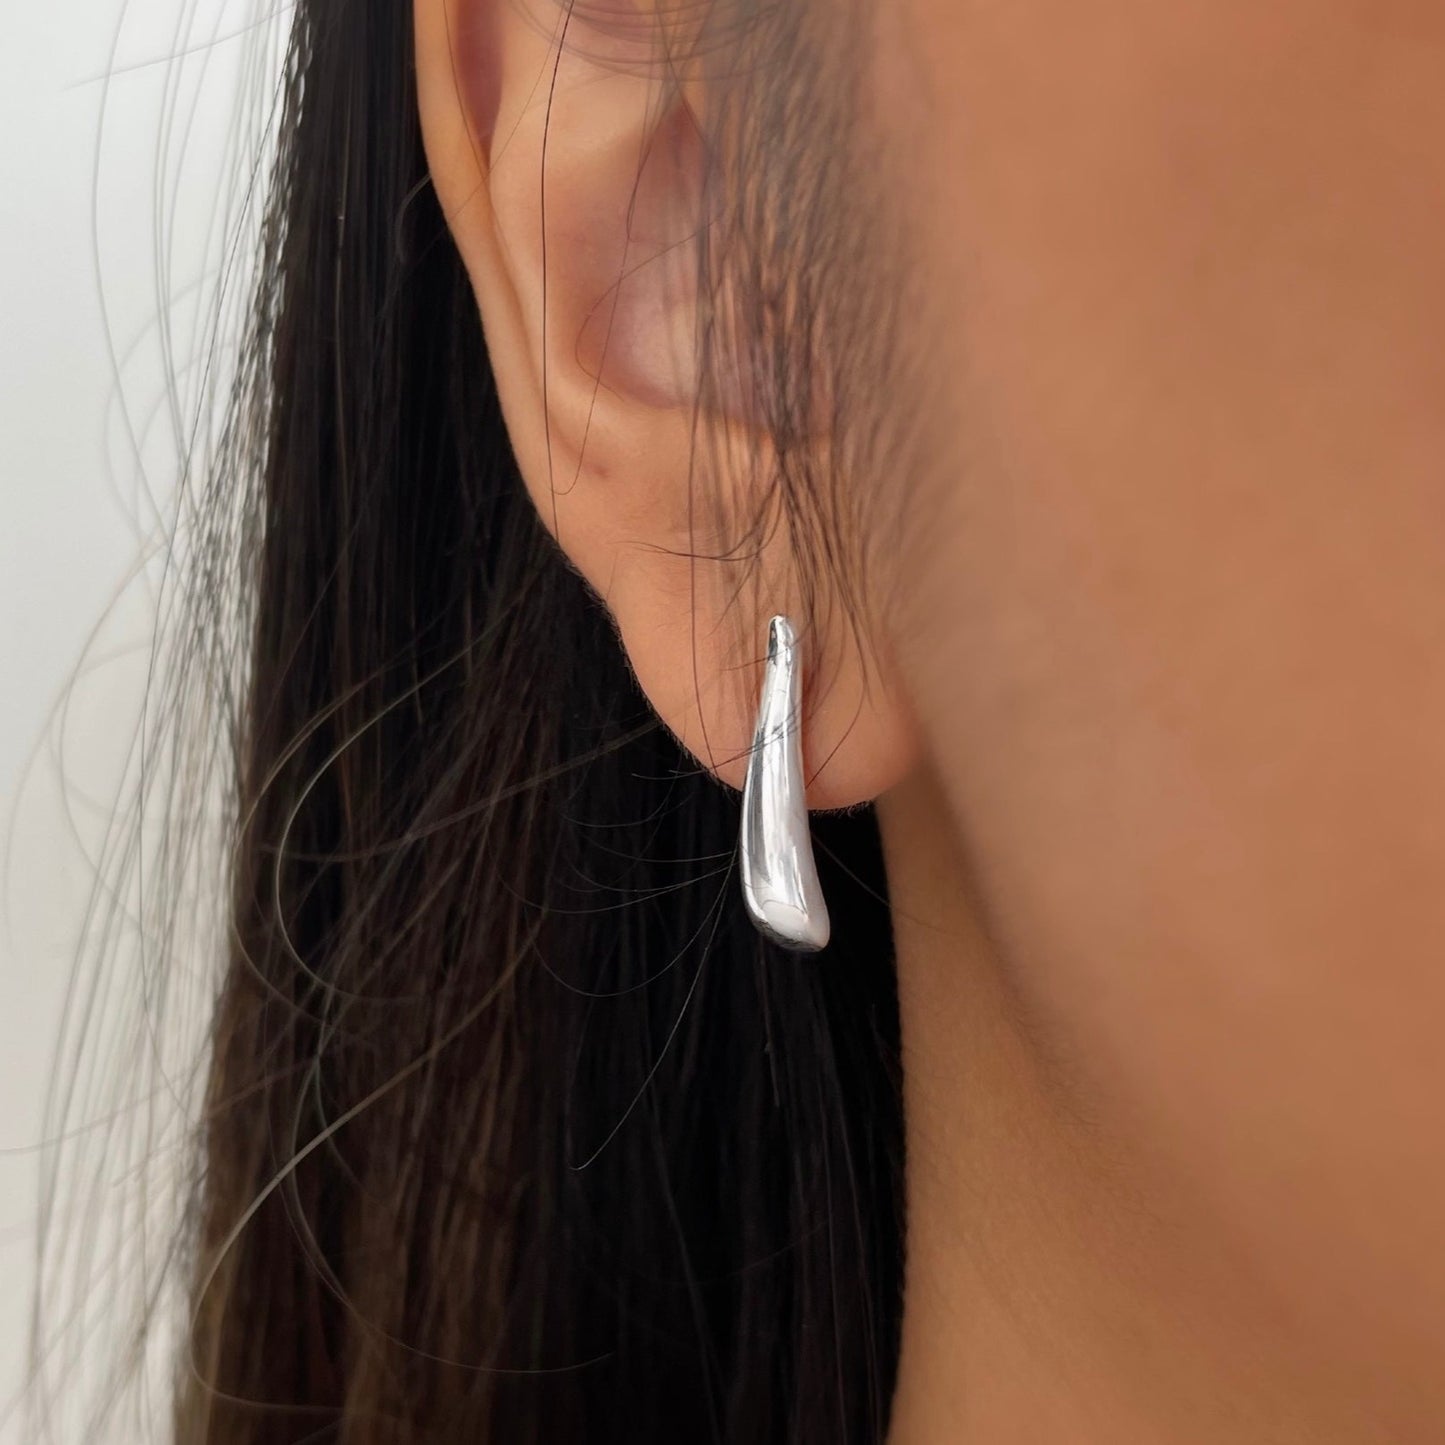 Mini Dew Drops Sterling Silver Stud Earrings